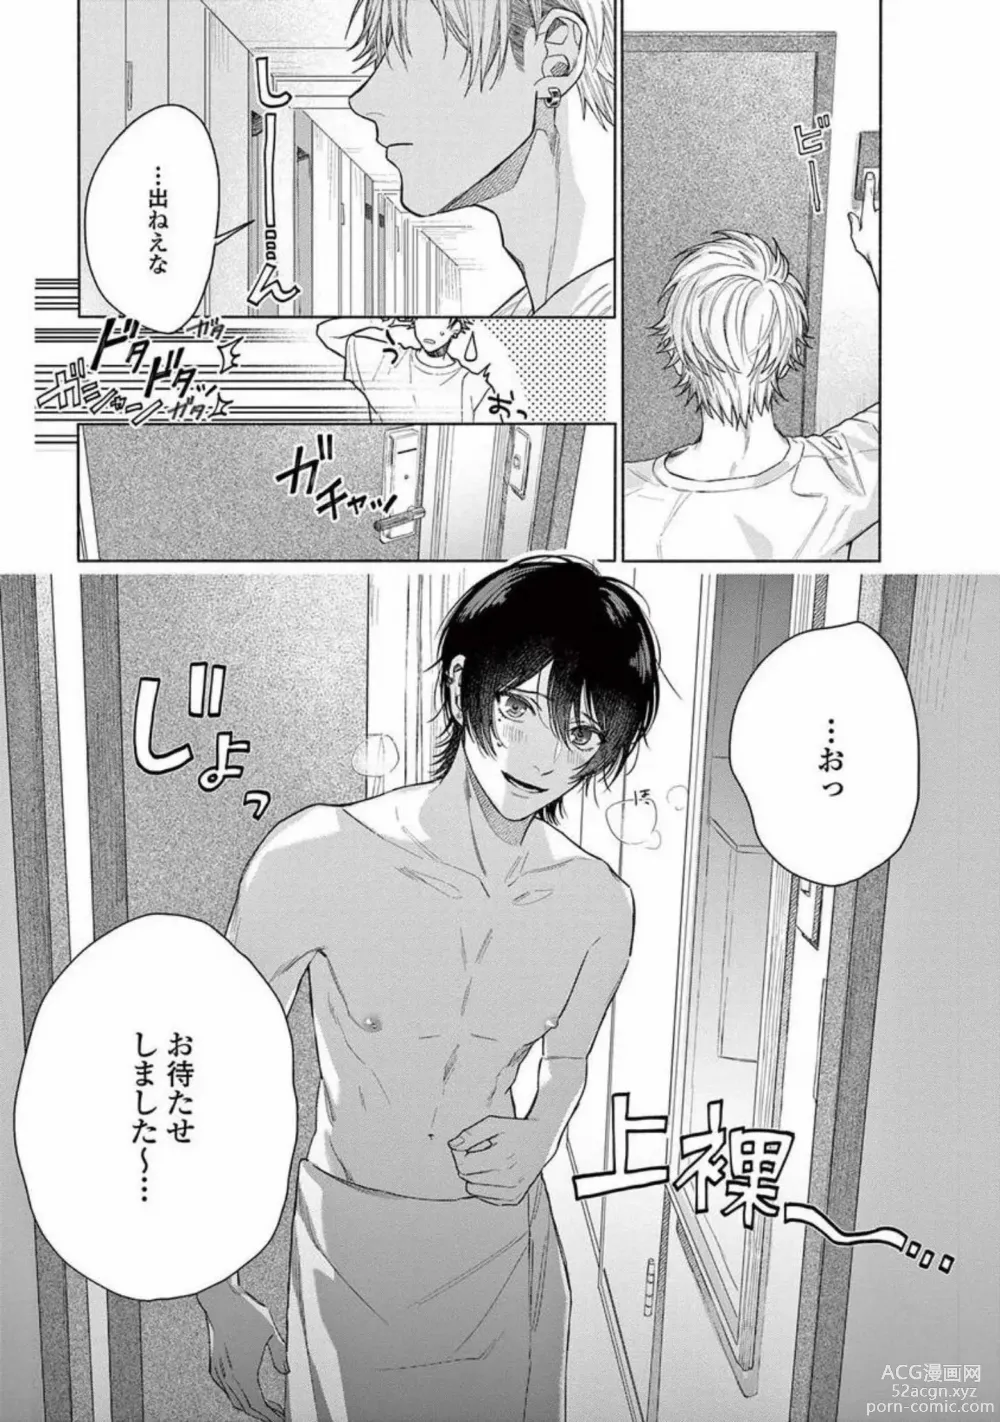 Page 13 of manga Junjou de Nani ga Warui - Whats wrong with being innocent?